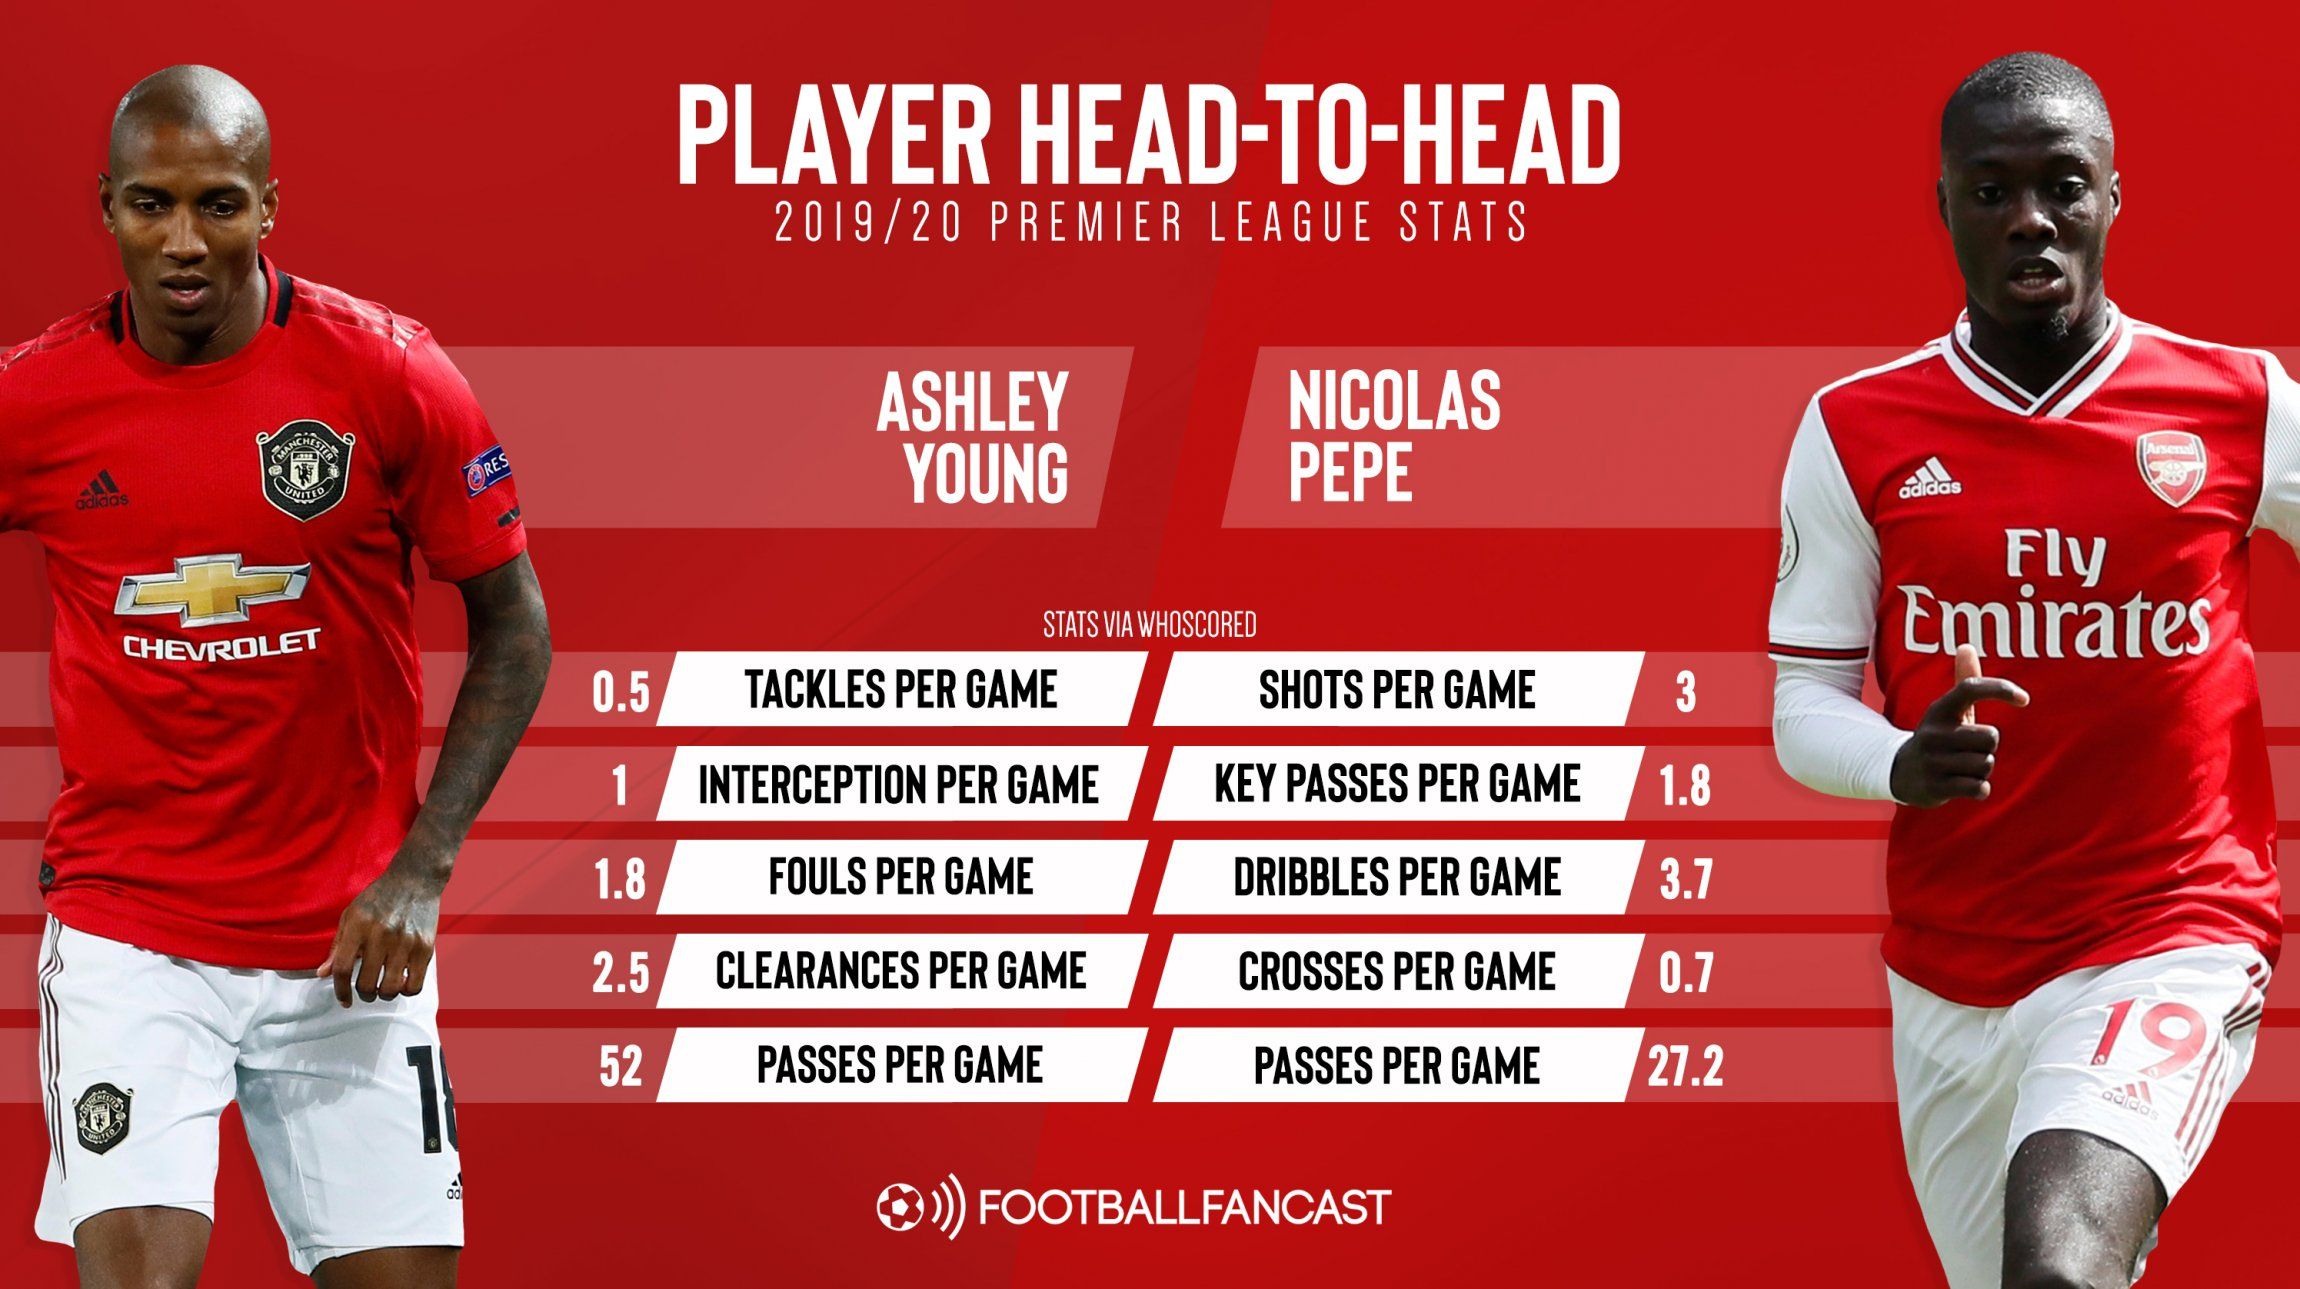 Ashley Young vs Nicolas Pepe